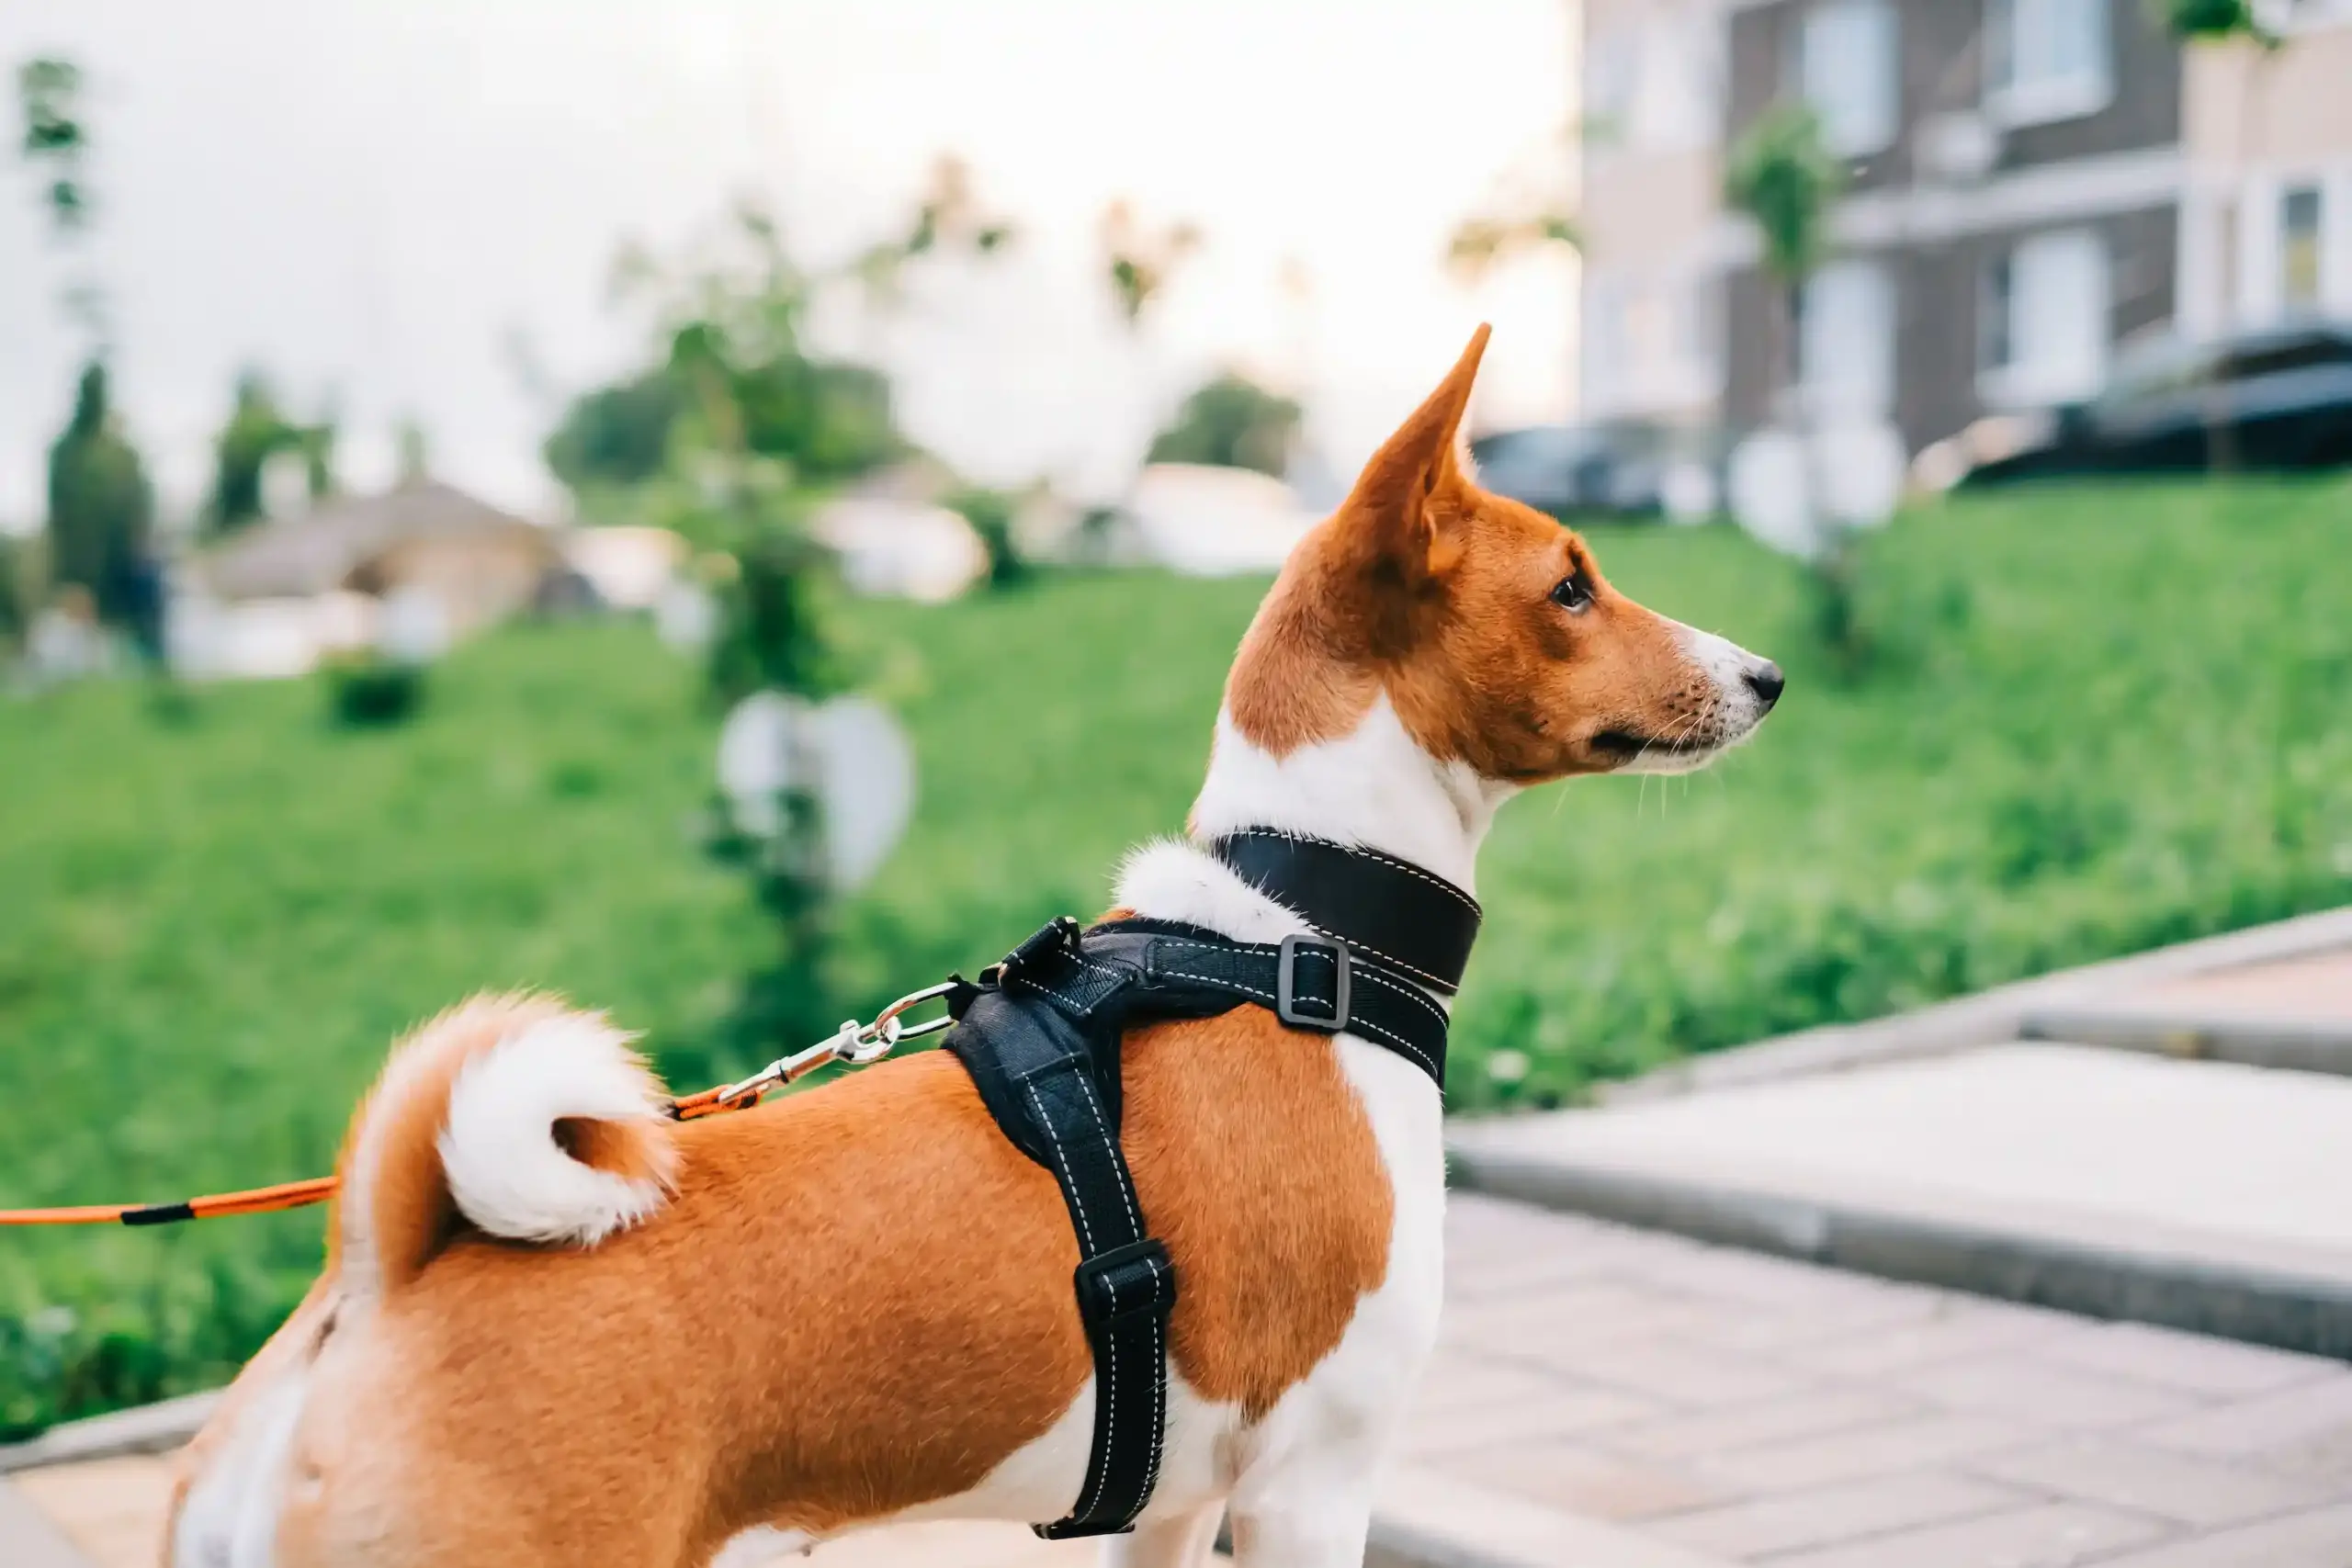 Cómo elegir el cinturón de seguridad para perros más apropiado?